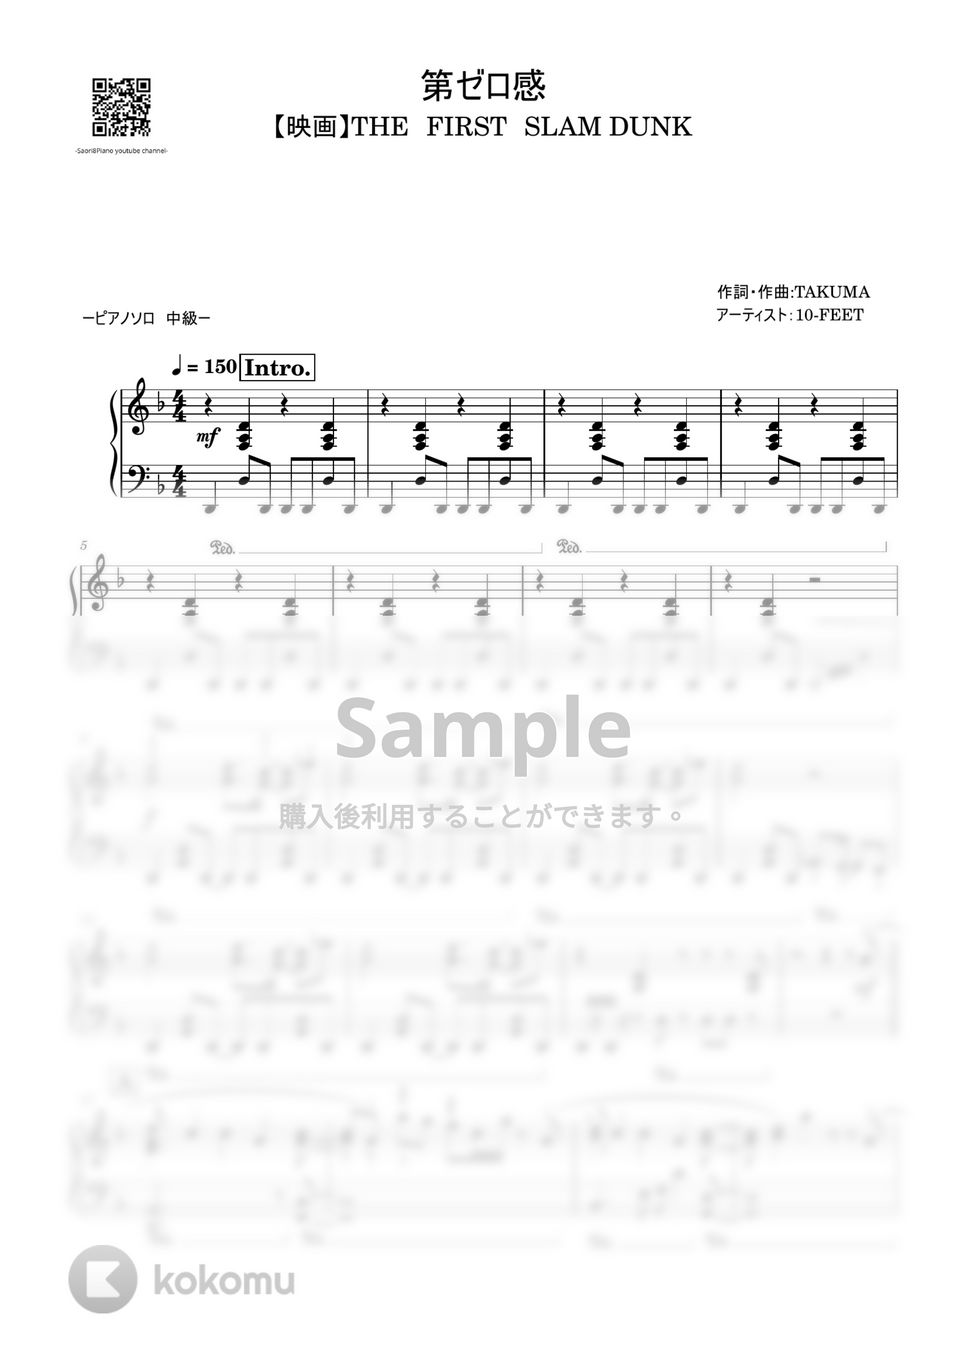 10-FEET - 第ゼロ感 (THE FIRST SLAM DUNK/中級レベル) by Saori8Piano